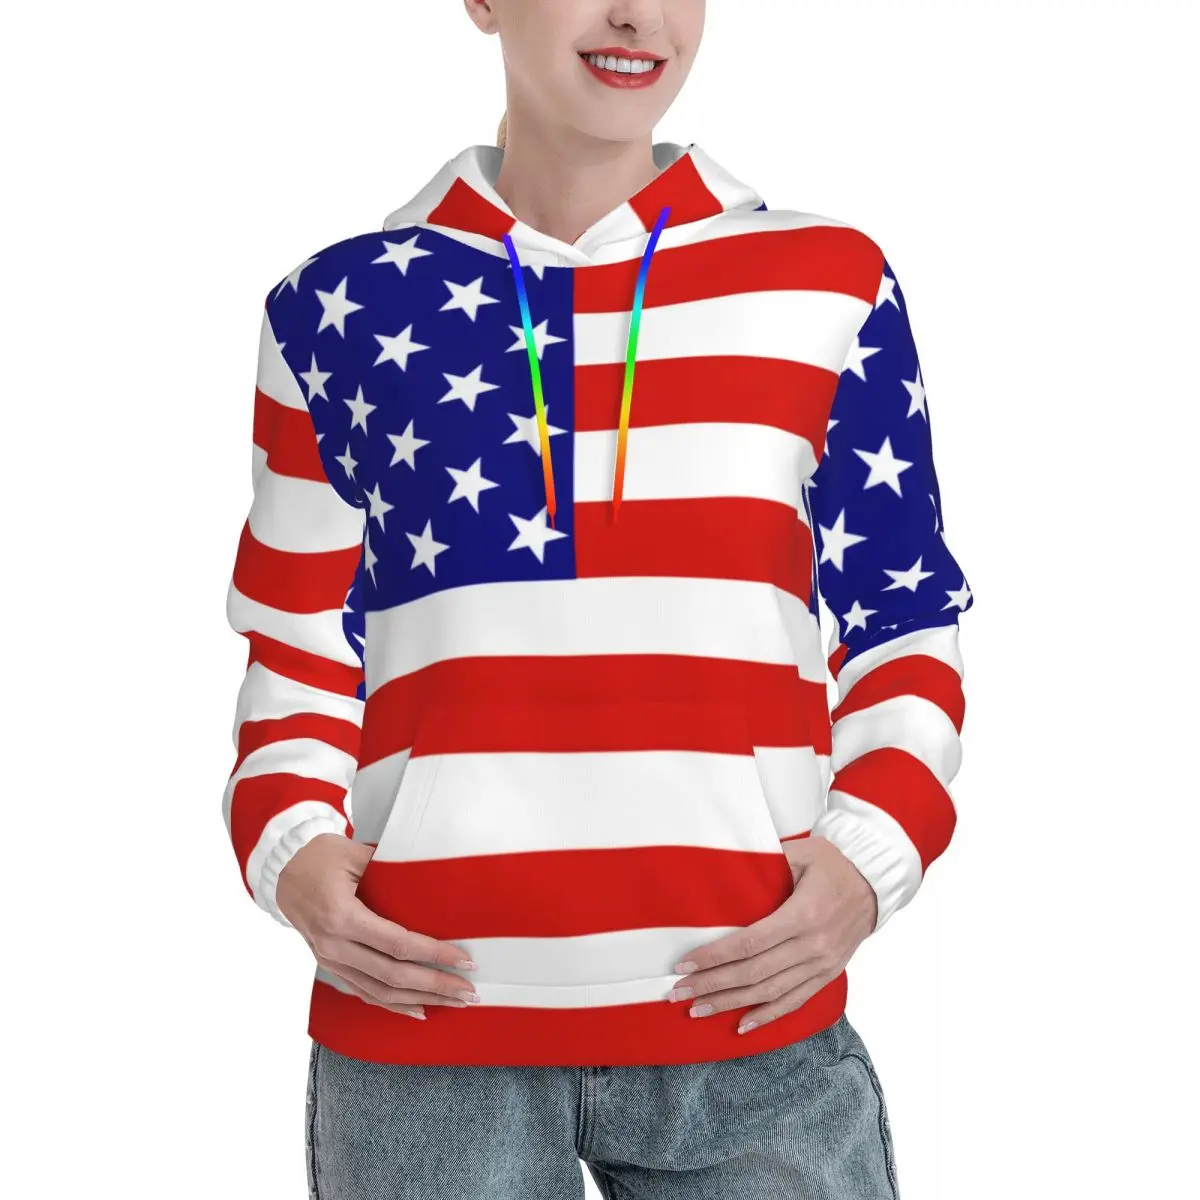 

Толстовки с капюшоном с принтом флага США, Весенняя уличная одежда в синюю звезду и полоску, Женский графический пуловер большого размера, толстовка с капюшоном